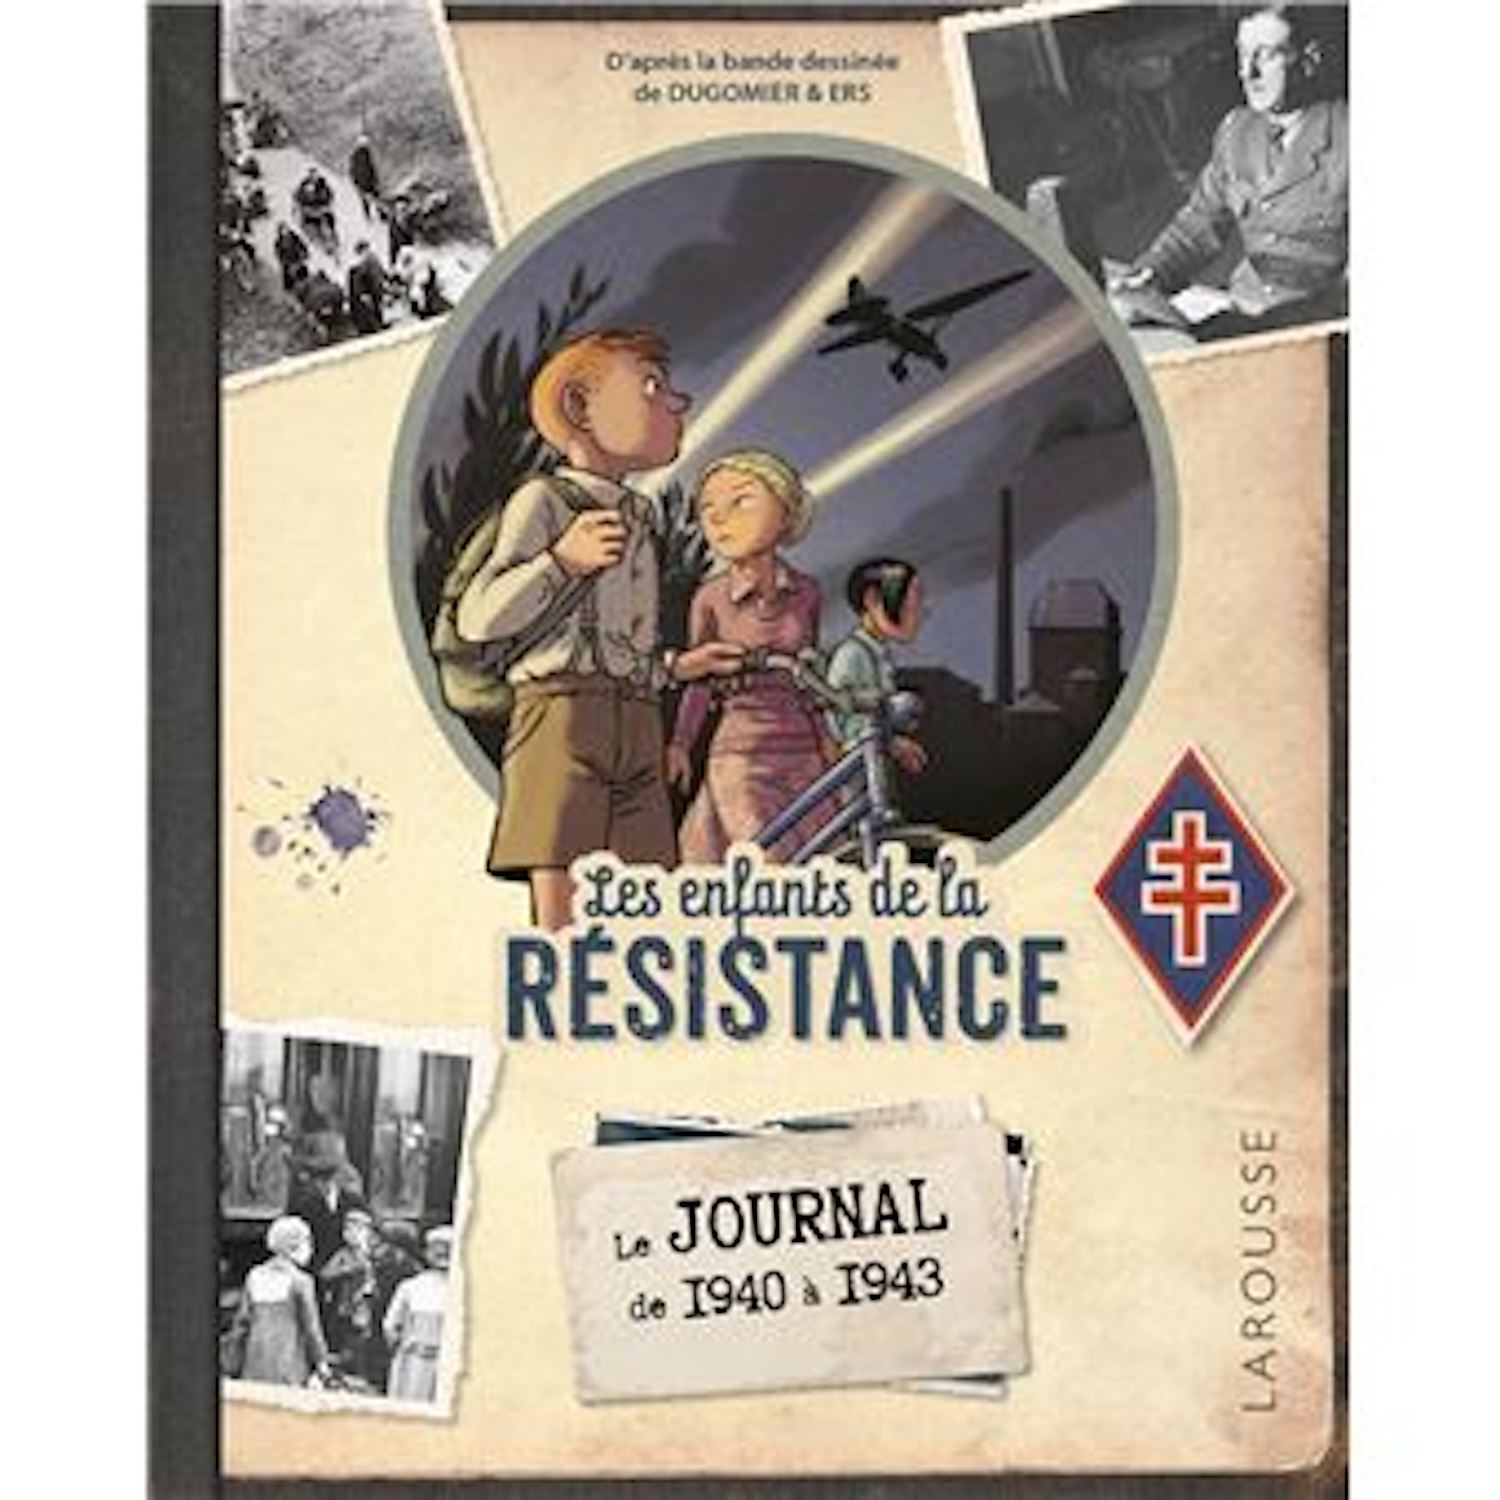 Le Journal des Enfants de la Résistance : un complément